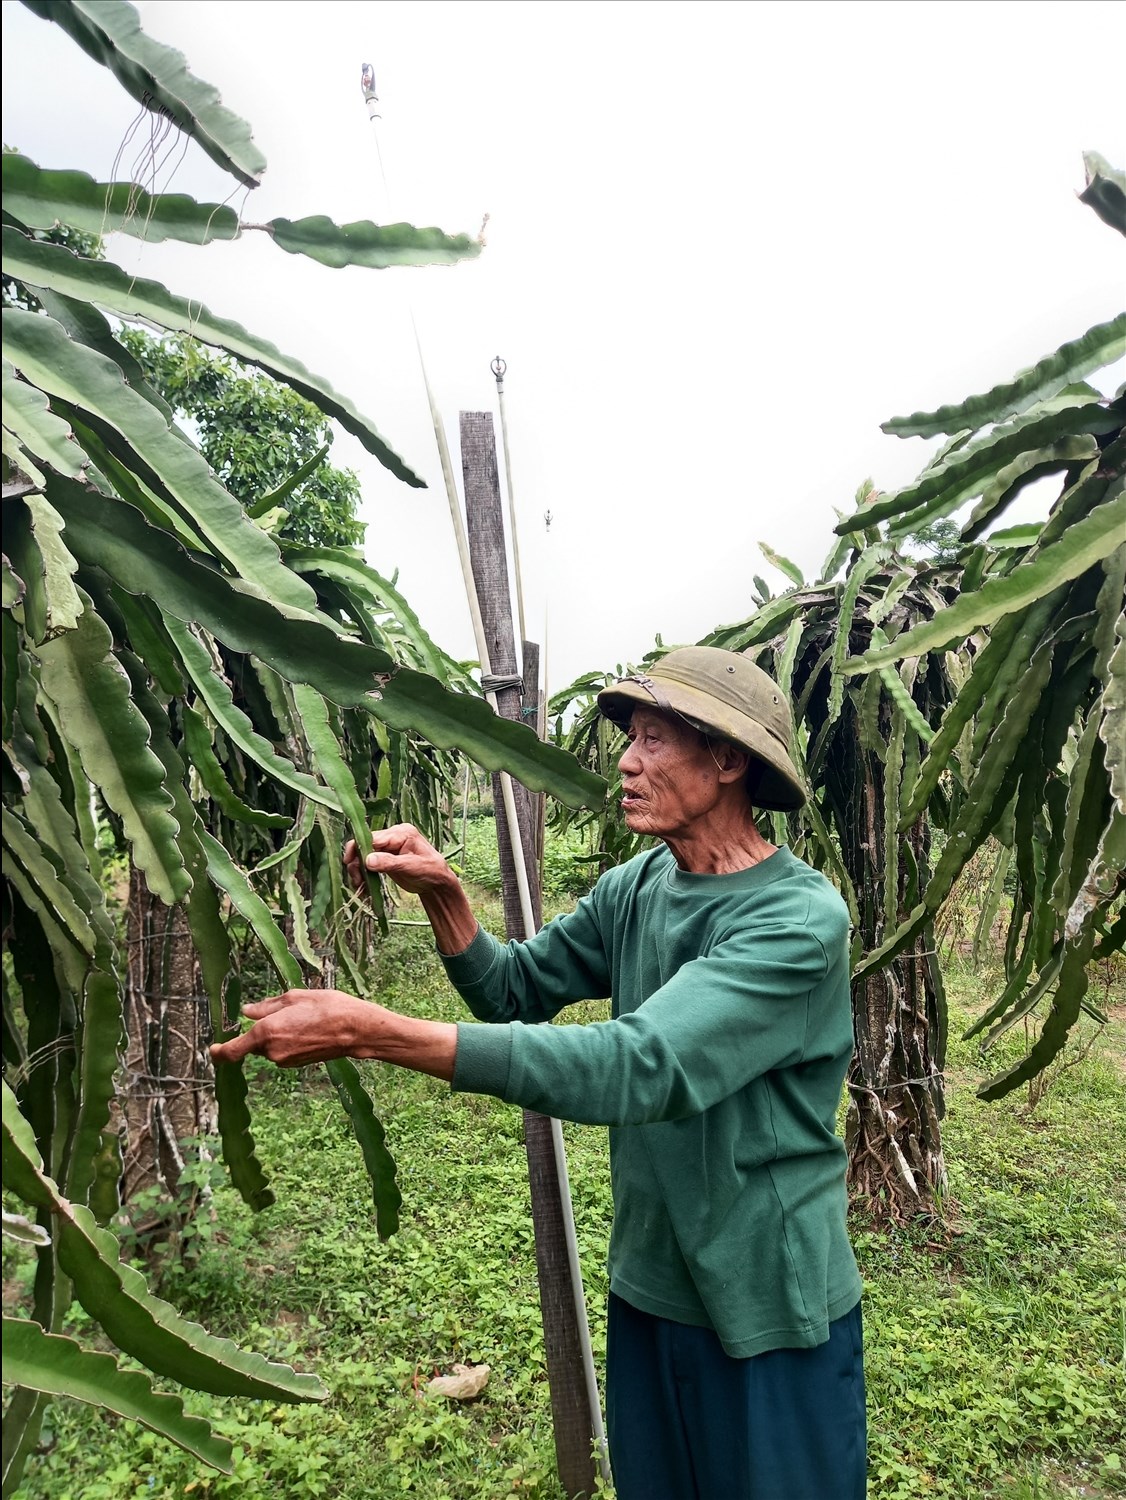 Cựu binh Lê Đa Kiểu ở làng Linh Hải, xã Vĩnh Thủy (Vĩnh Linh) giờ vui thú với ruộng vườn